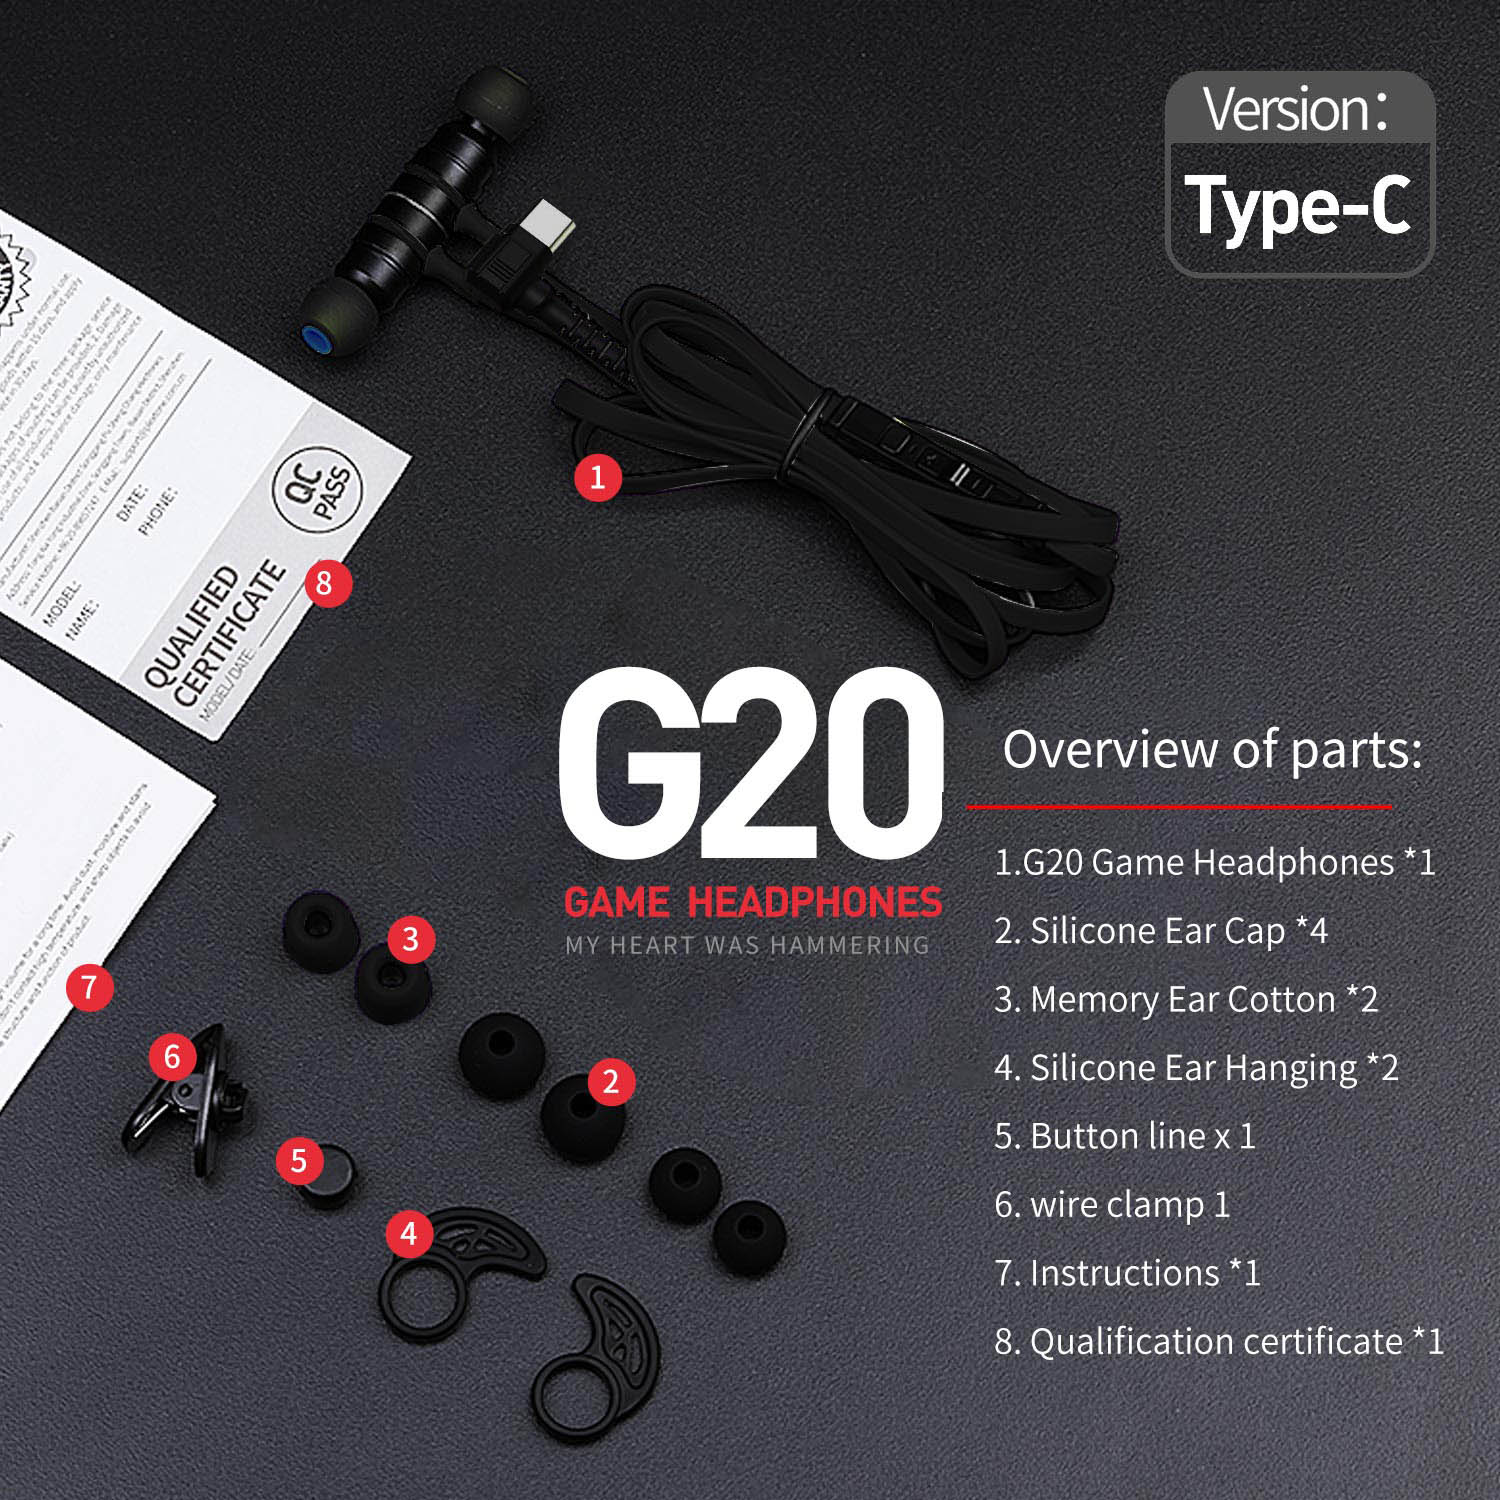 Tai nghe Plextone G20 Type C phiên bản 2019, tích hợp từ tính nam châm đặc biệt hữu ích trong trò chơi, trang bị thêm một loạt các phụ kiện, gửi cáp mở rộng, cáp adapter PC, sự kết hợp linh hoạt của tính linh hoạt - Hàng Chính Hãng.